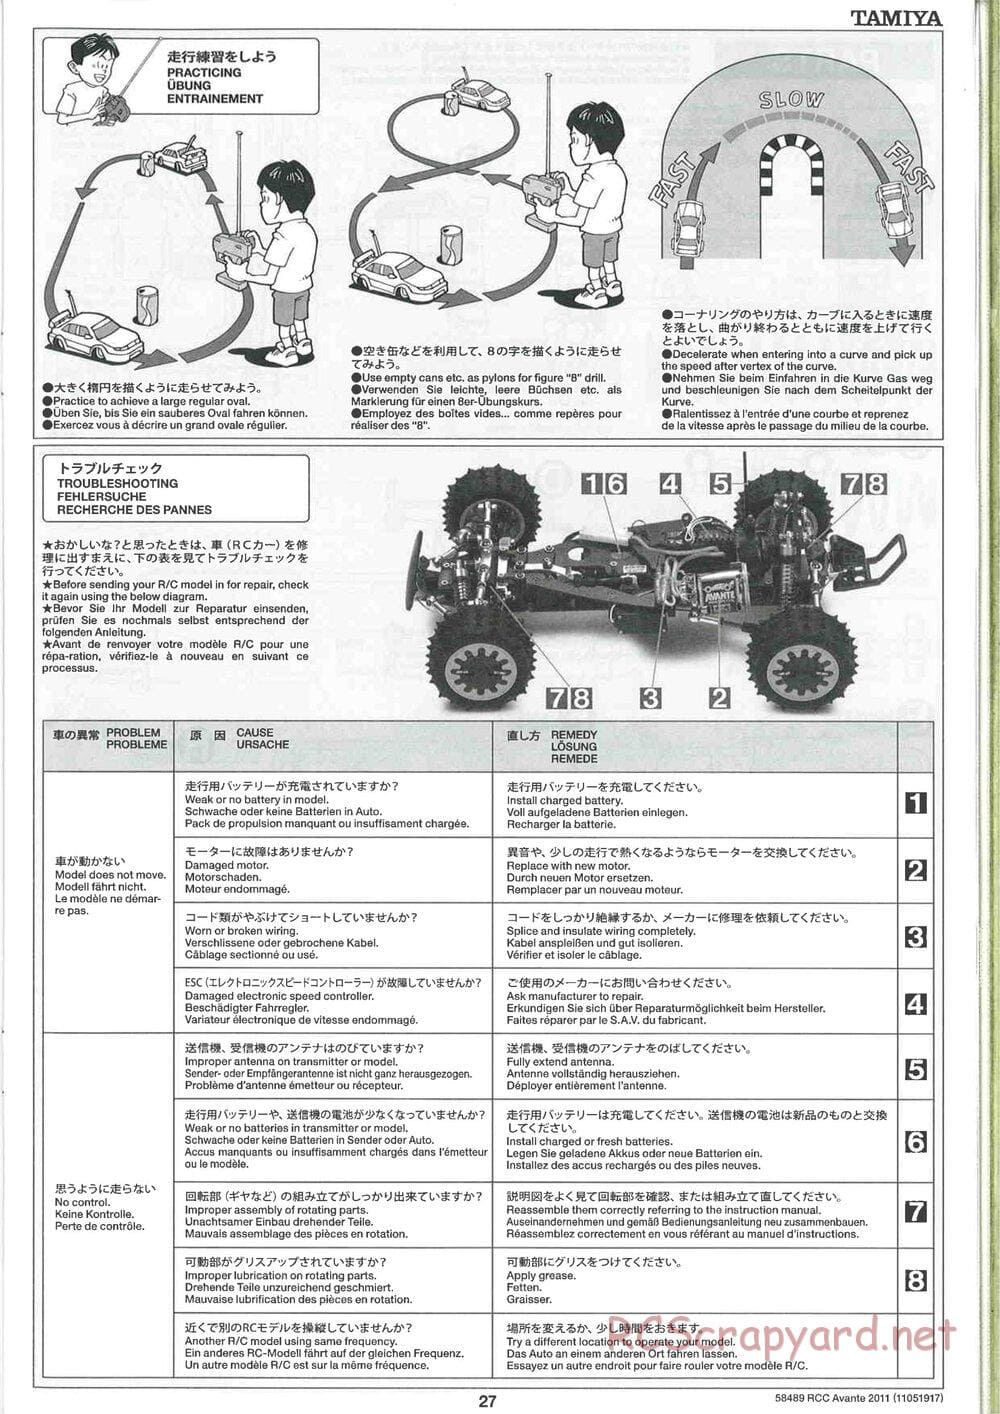 Tamiya - Avante 2011 - AV Chassis - Manual - Page 27